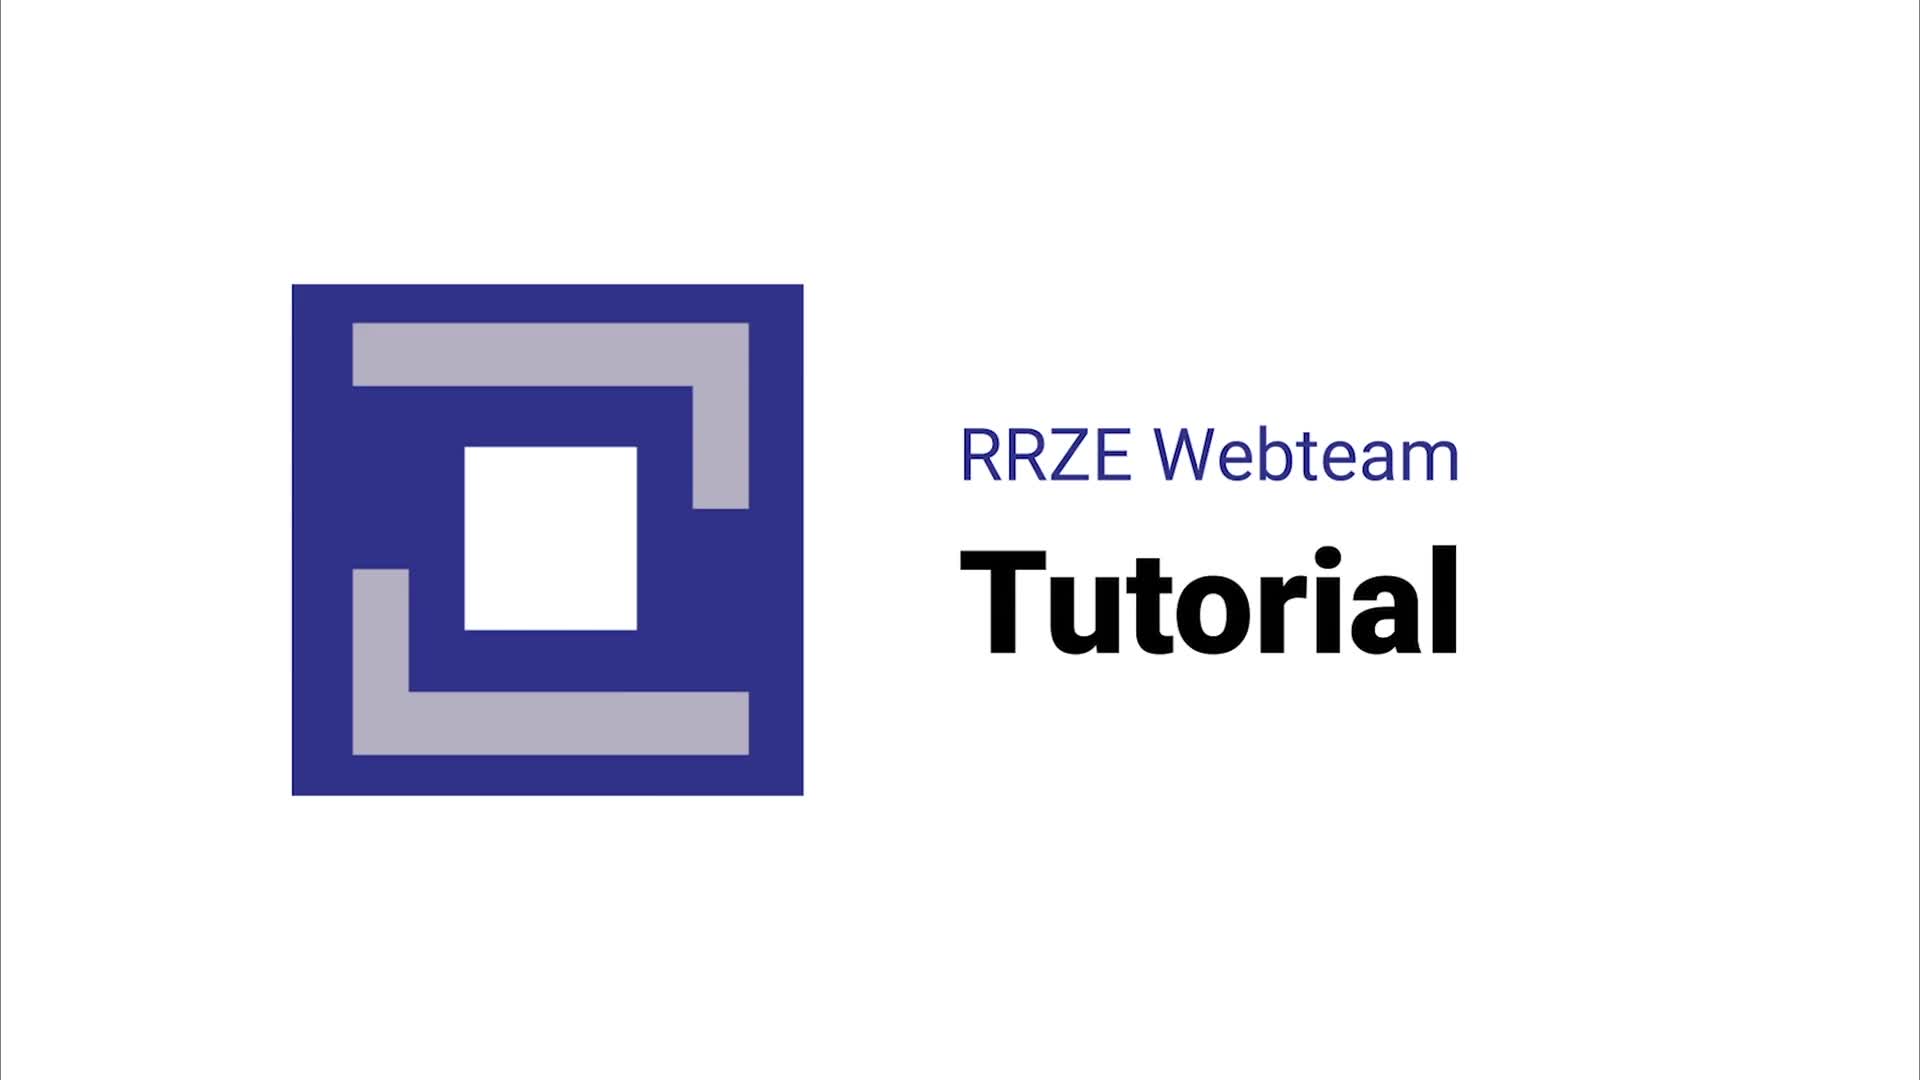 RRZE - Schnellstart FAU Einrichtungen | 2021 - Eine klassische Startseite anlegen. preview image